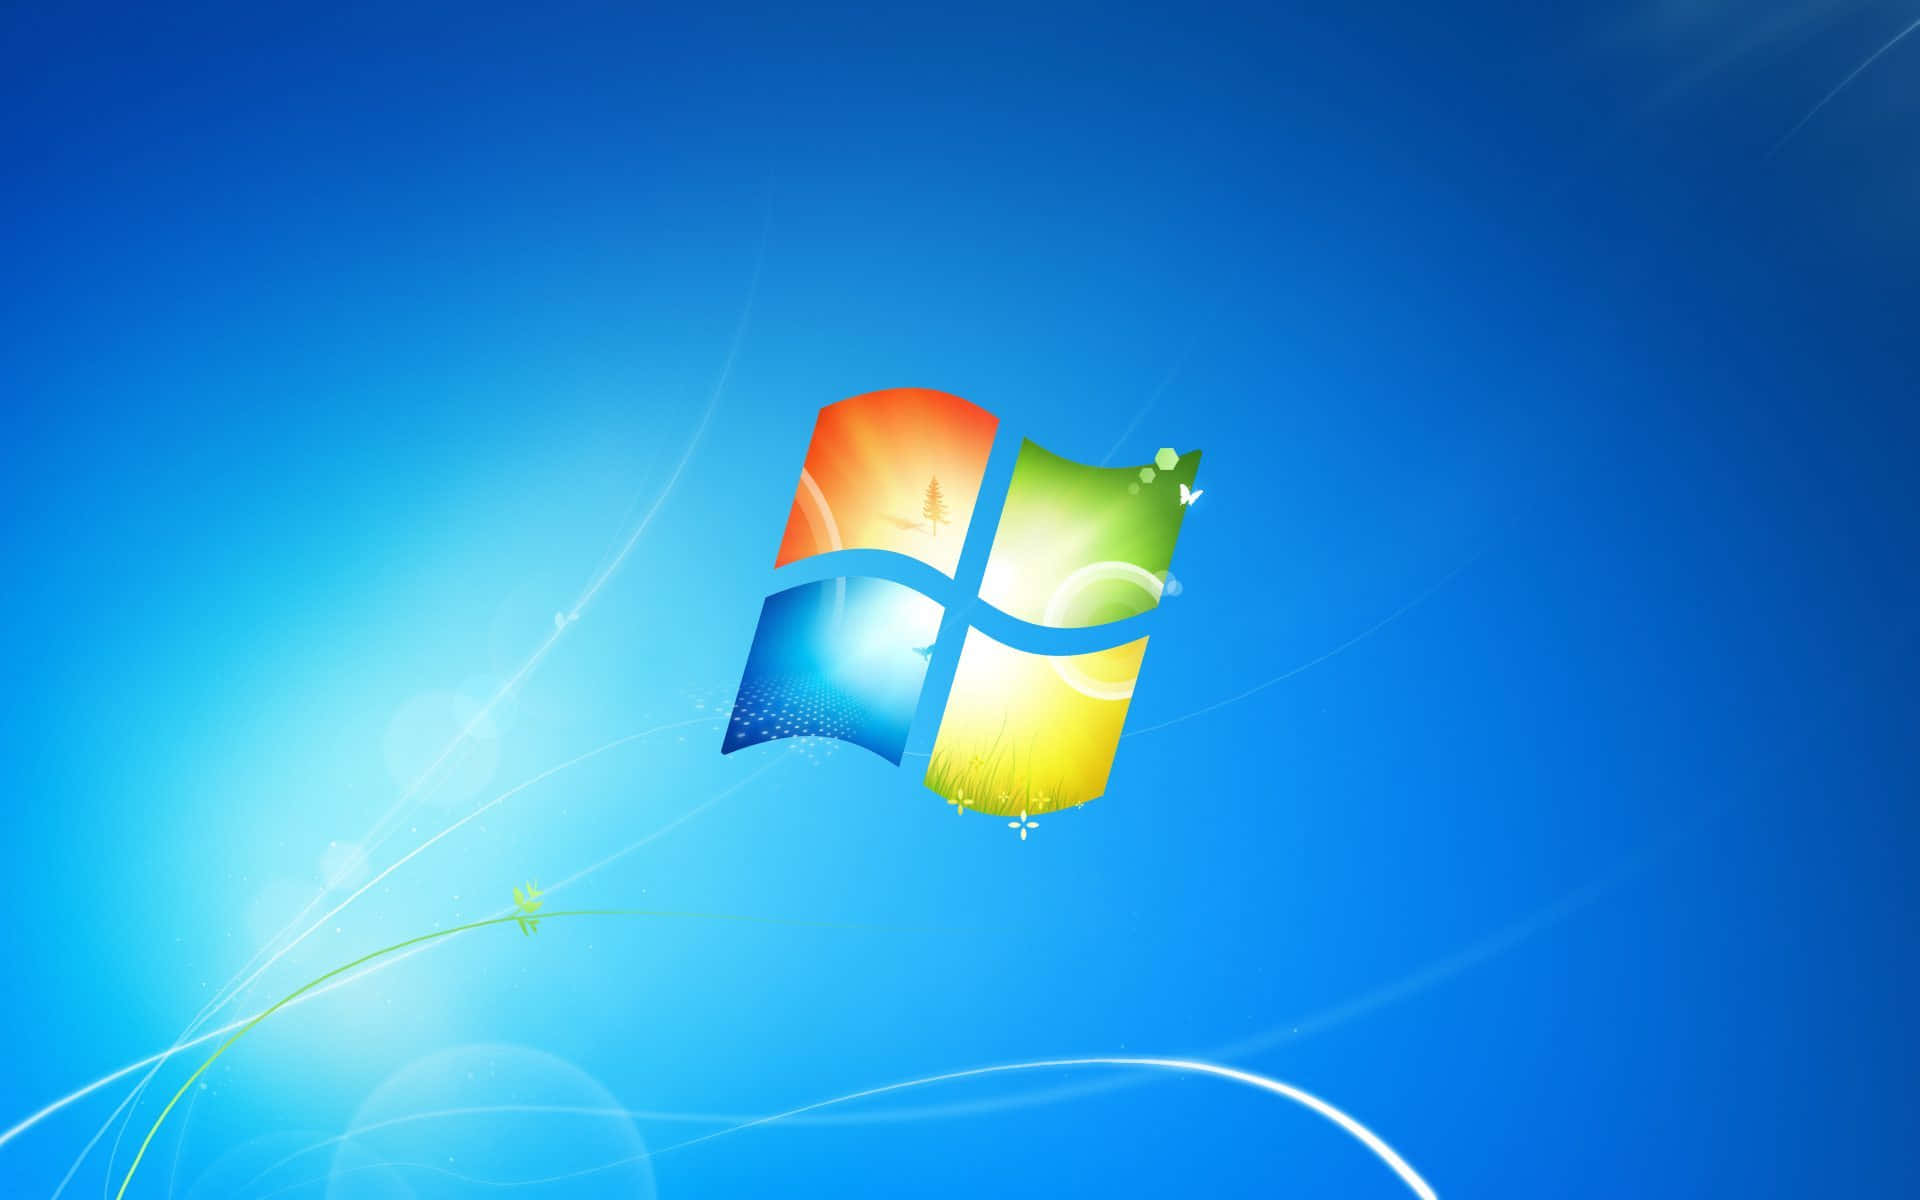 Windows7 - Updates Installieren, Arbeiten Über Mehrere Geräte Hinweg